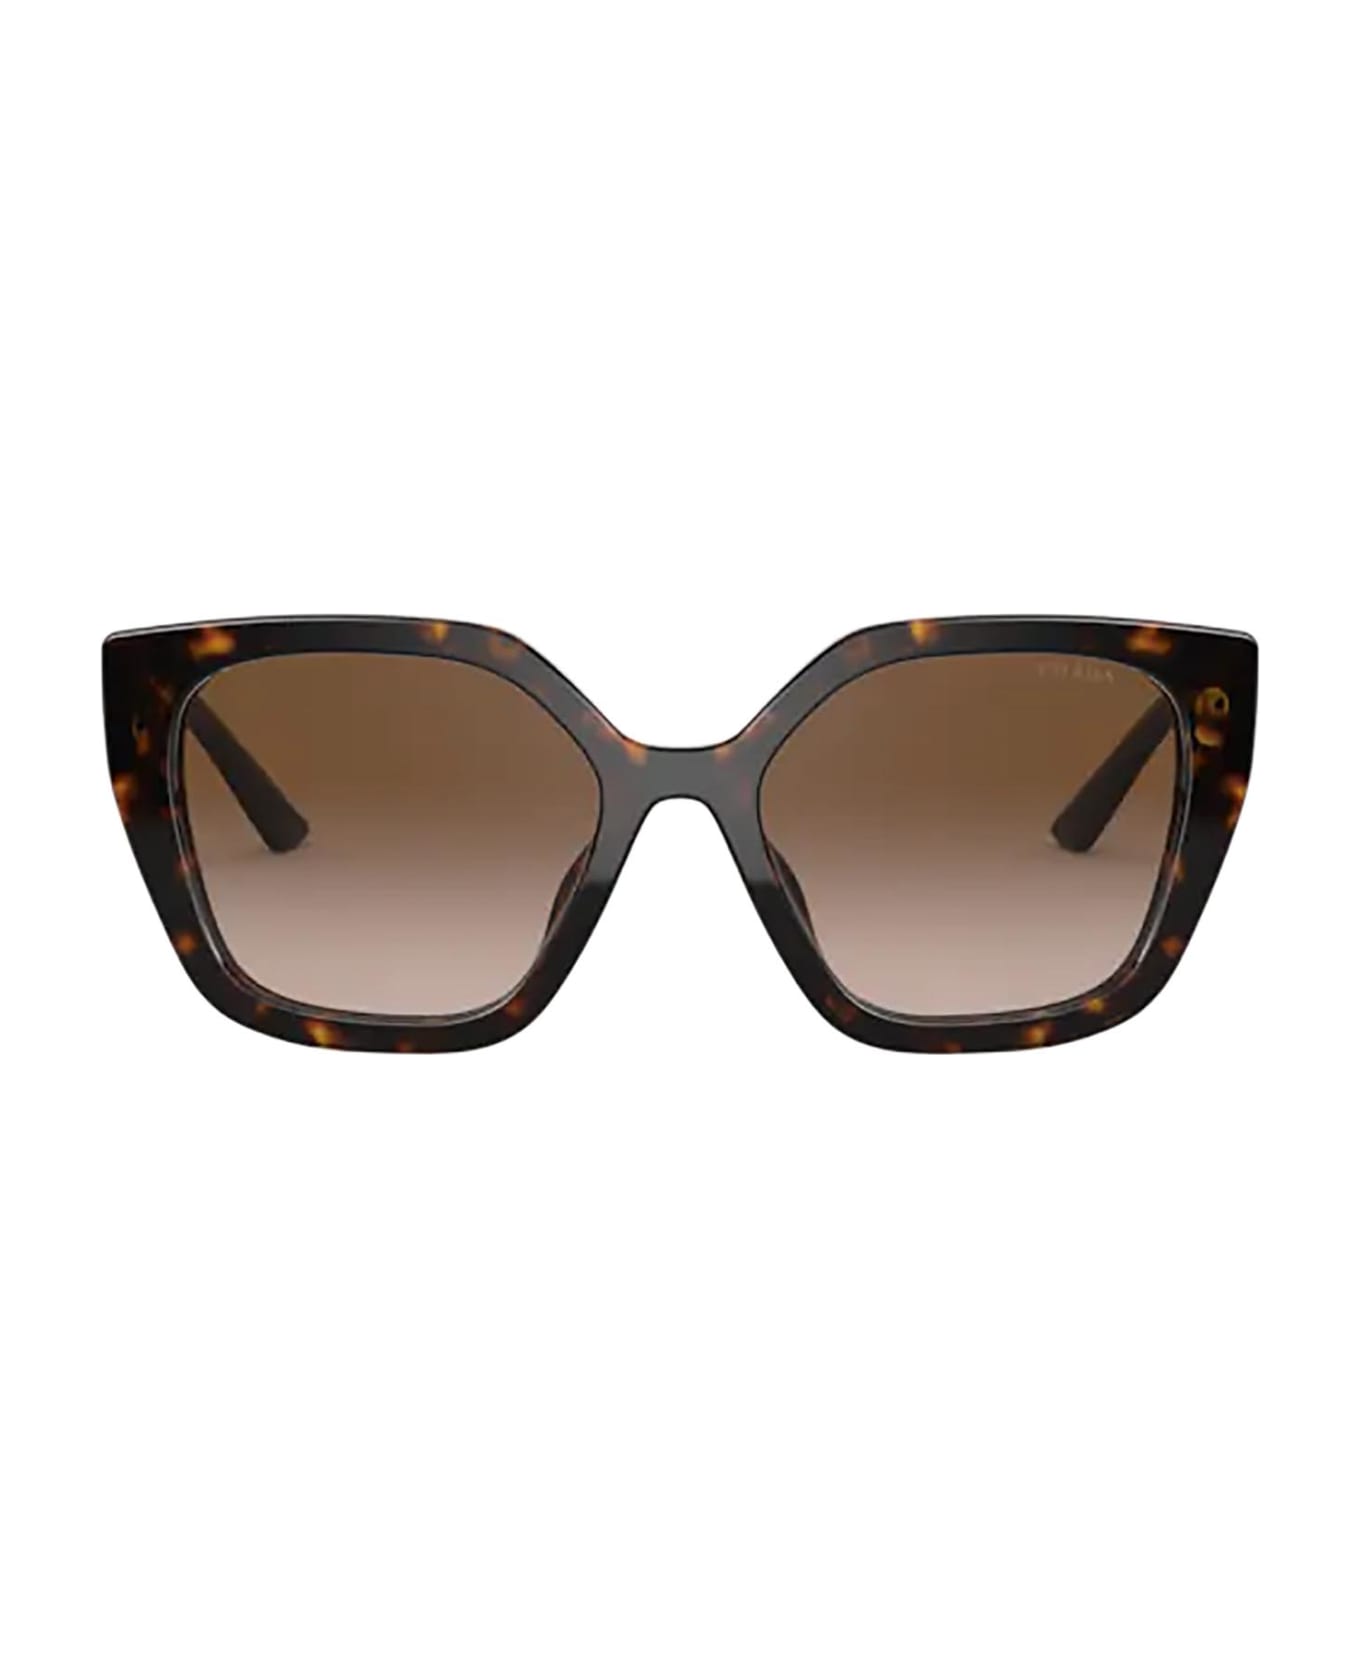 Prada Eyewear Pr 24xs Havana Sunglasses - Havana